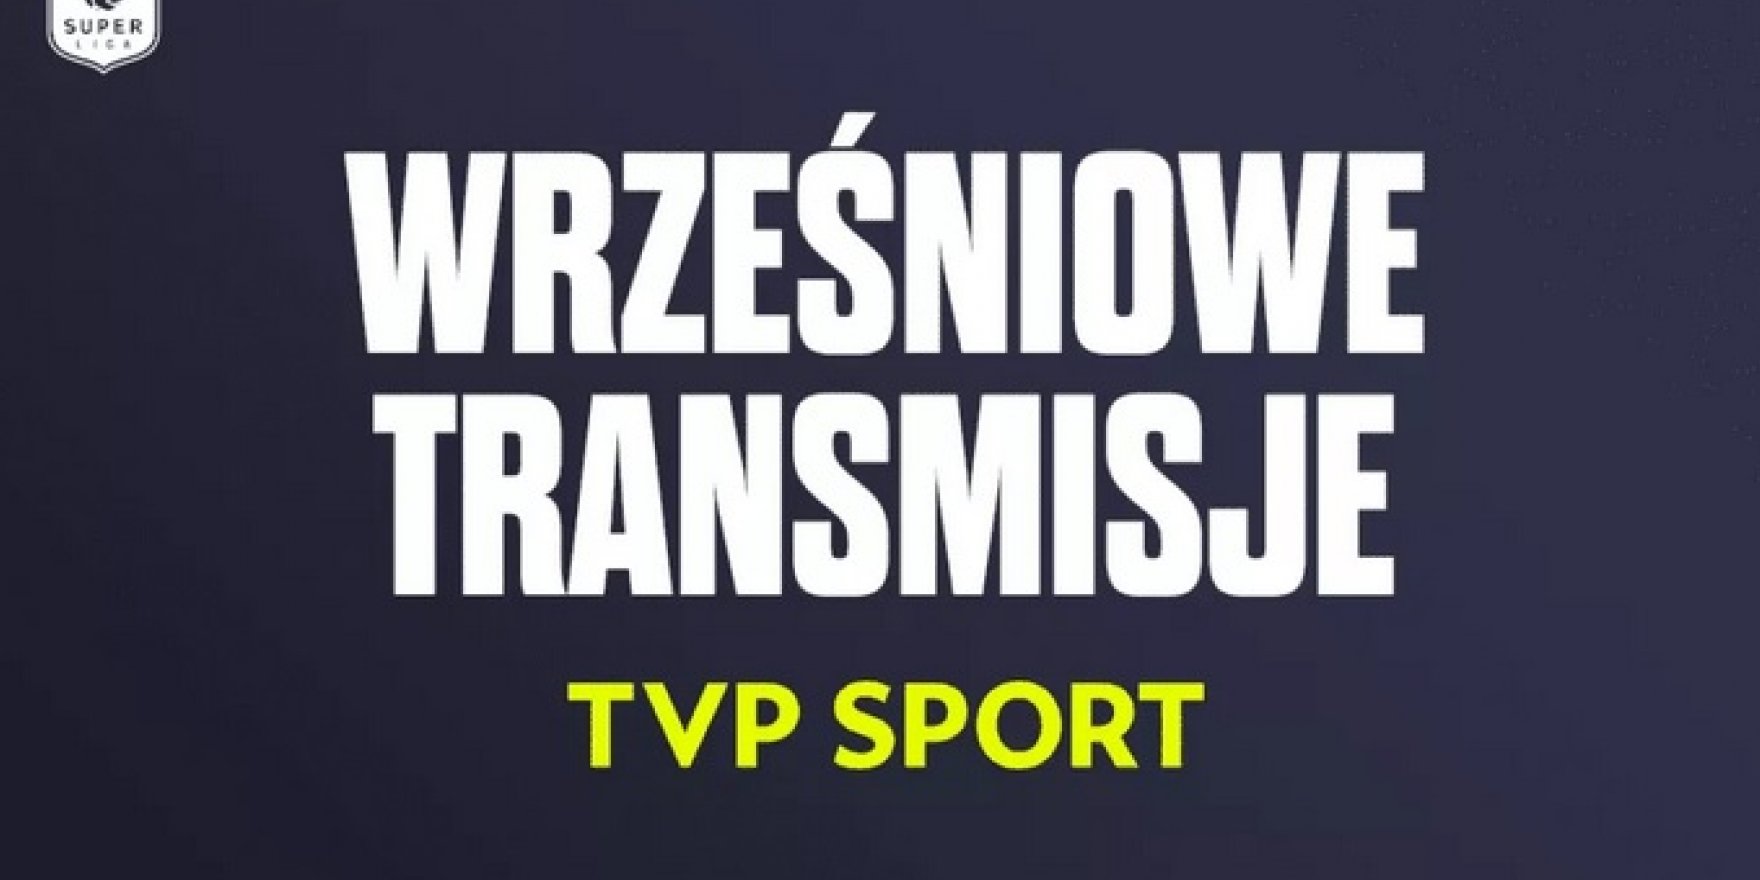 Zobacz plan wrześniowych transmisji w TVP Sport